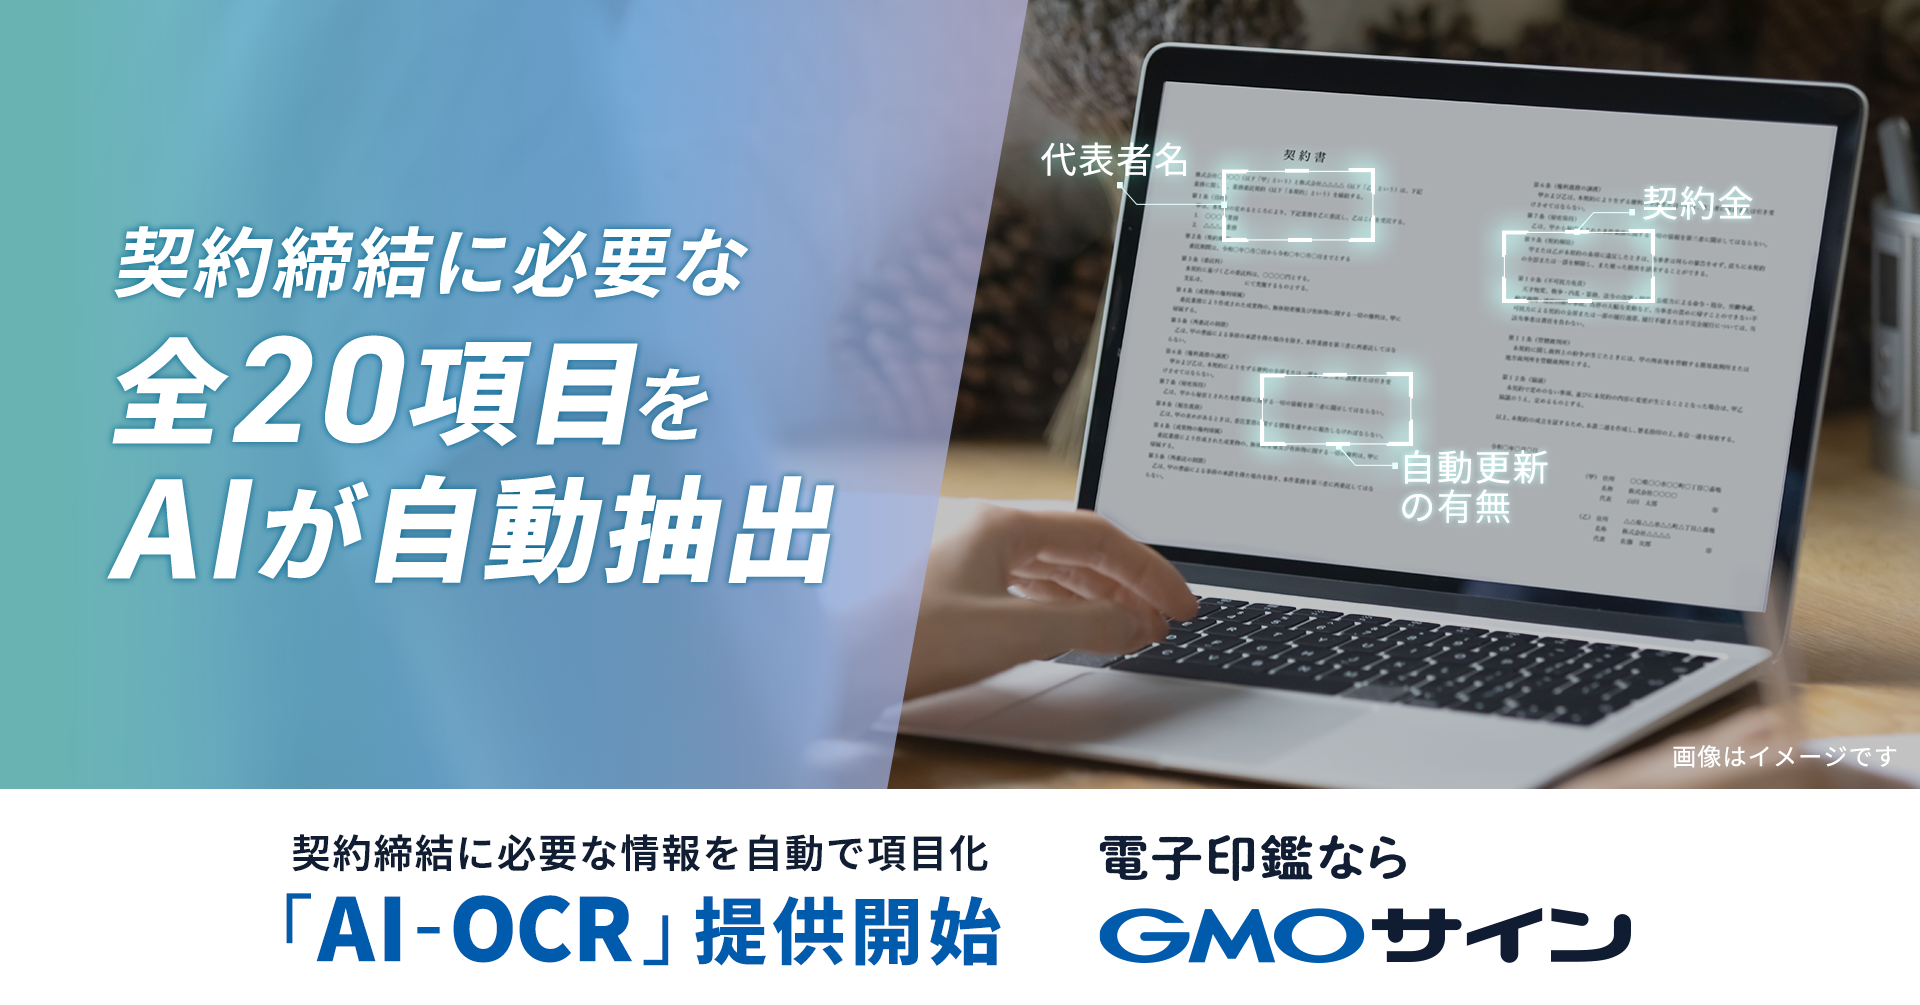 電子契約サービス「電子印鑑GMOサイン」、 契約書内容を自動で読み取り項目化する「AI-OCR」を提供開始